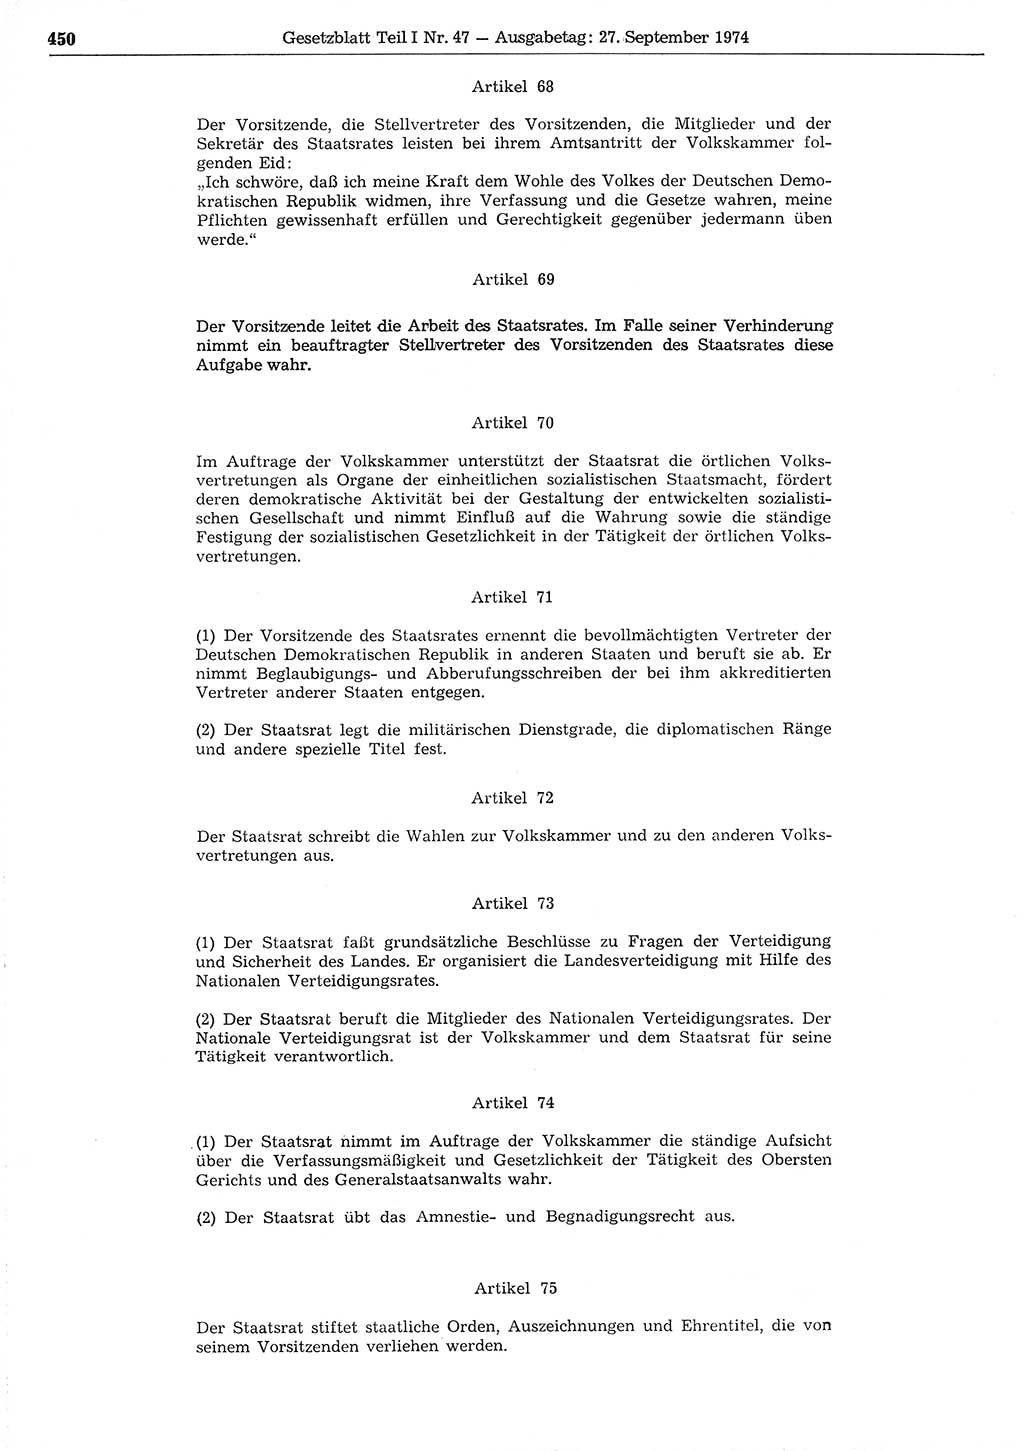 Gesetzblatt (GBl.) der Deutschen Demokratischen Republik (DDR) Teil Ⅰ 1974, Seite 450 (GBl. DDR Ⅰ 1974, S. 450)